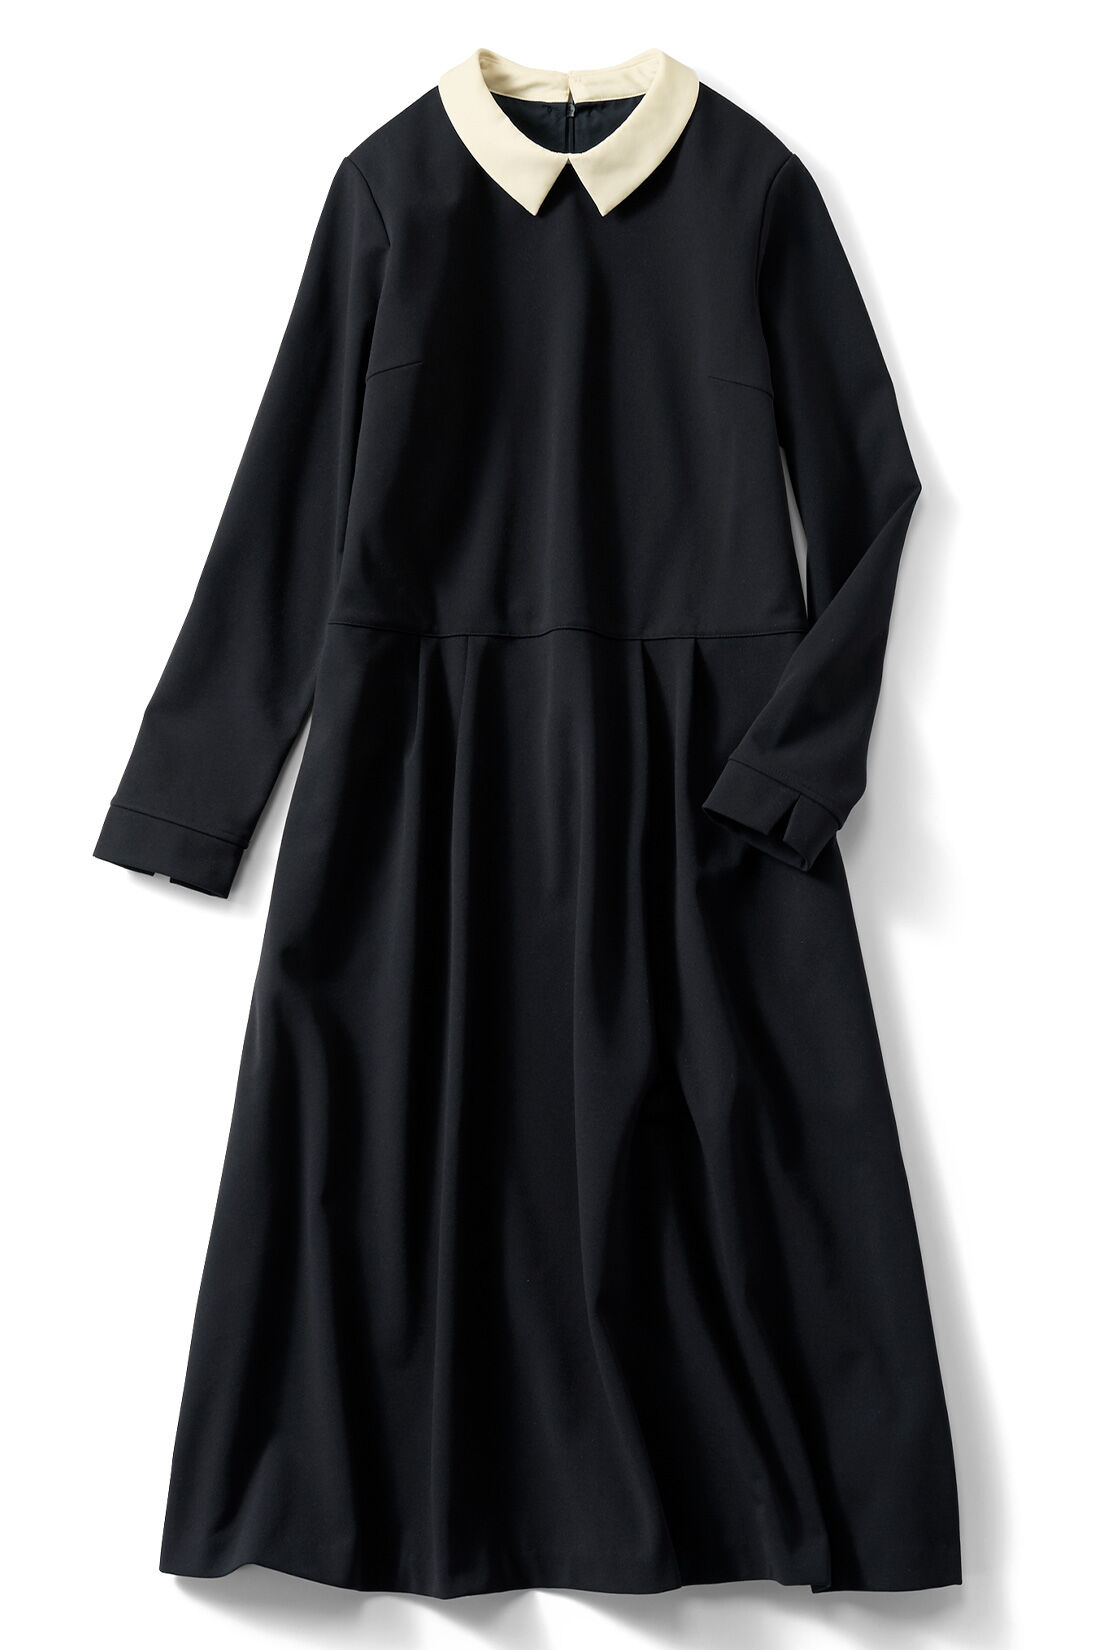 DRECO by IEDIT|【3～10日でお届け】IEDIT[イディット]　取り外し可能な衿付きが上品新鮮 裏微起毛カットソージョーゼットで 暖かで伸びやかなきれい見えワンピース〈ブラック〉|〈ブラック〉